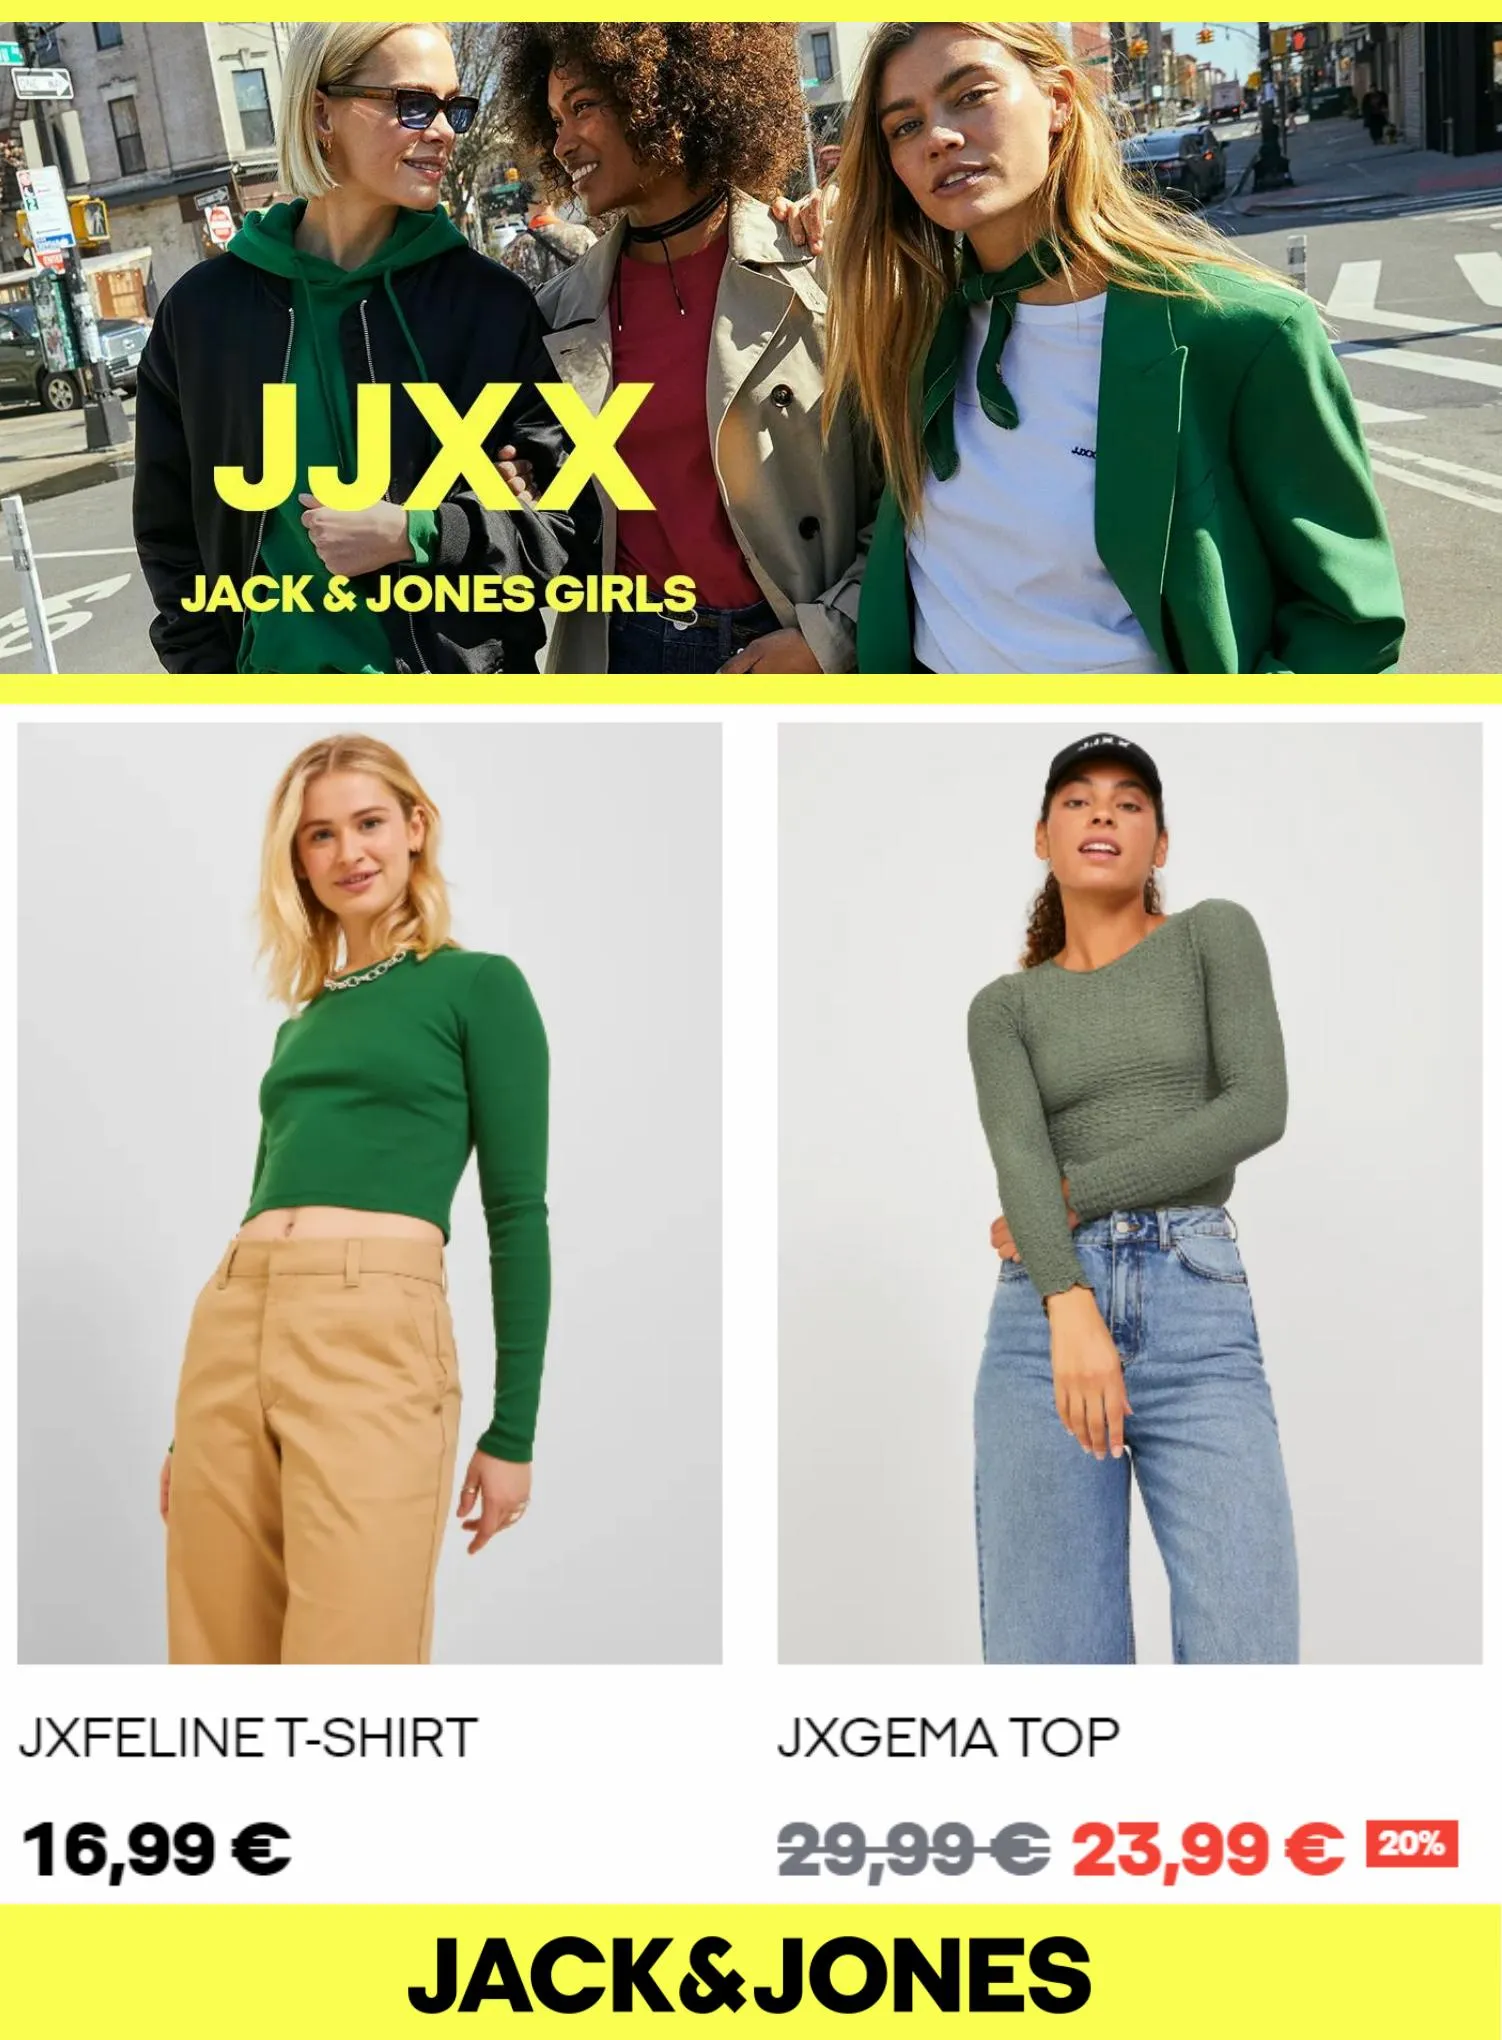 Catalogue JJXX Jack & Jones Girls, page 00005